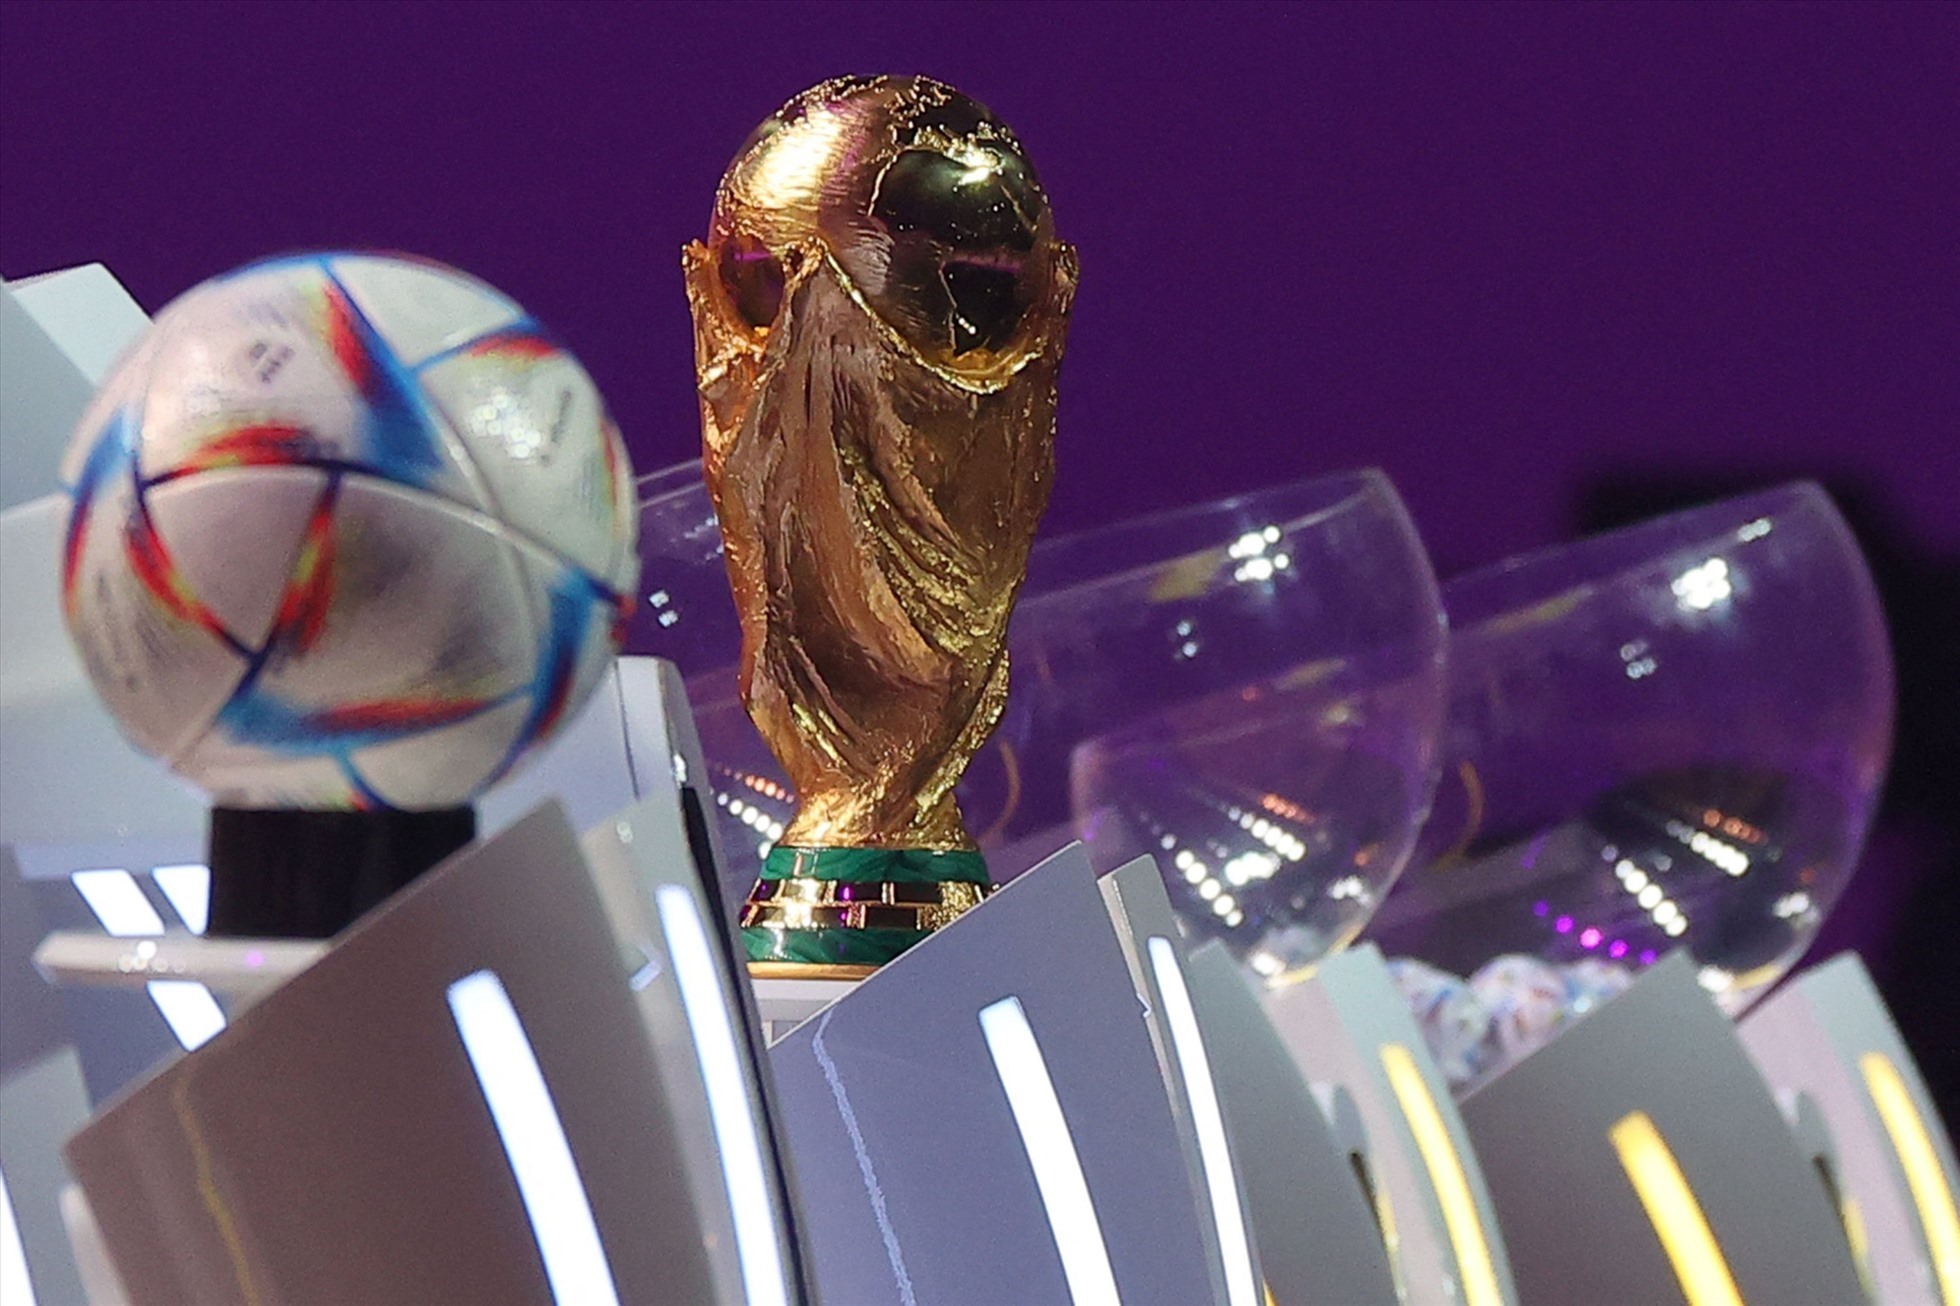 Đội tuyển Pháp, Đức, Bỉ, Brazil, Argentina là những ứng cử viên sáng giá cho chức vô địch năm nay. Ảnh: AFP